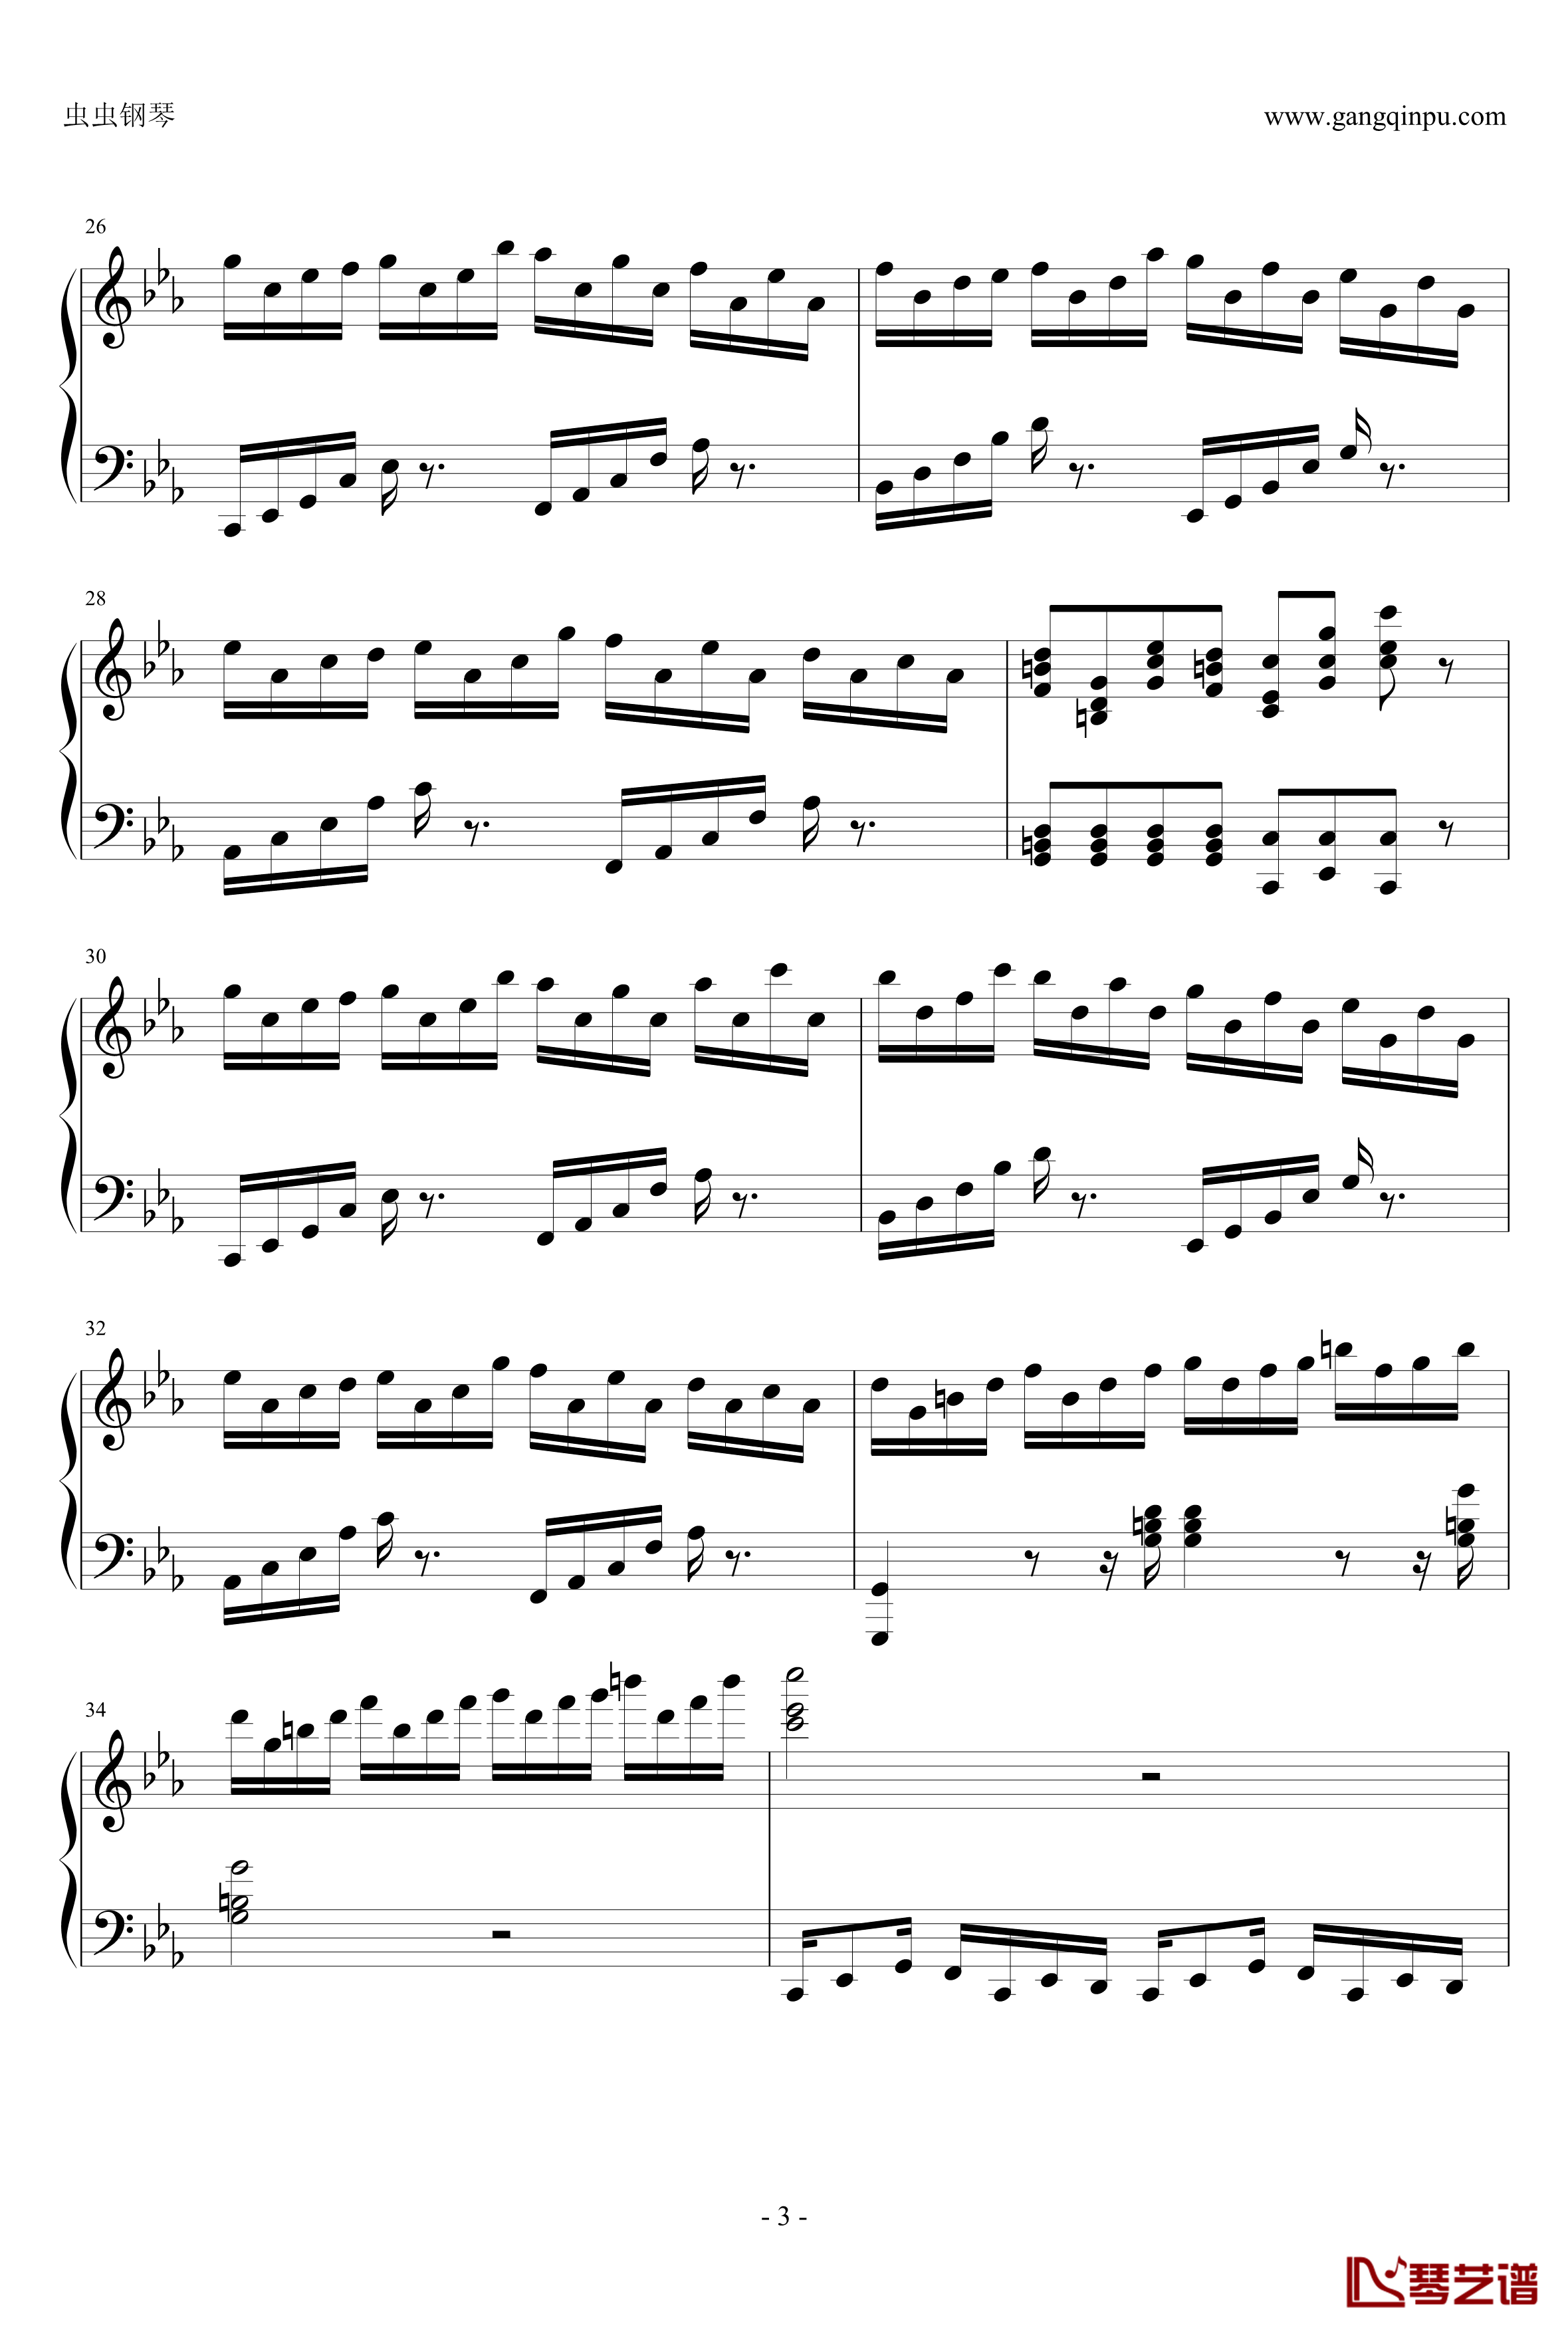 克罗地亚狂想曲钢琴谱-这个才是原版-马克西姆-Maksim·Mrvica3